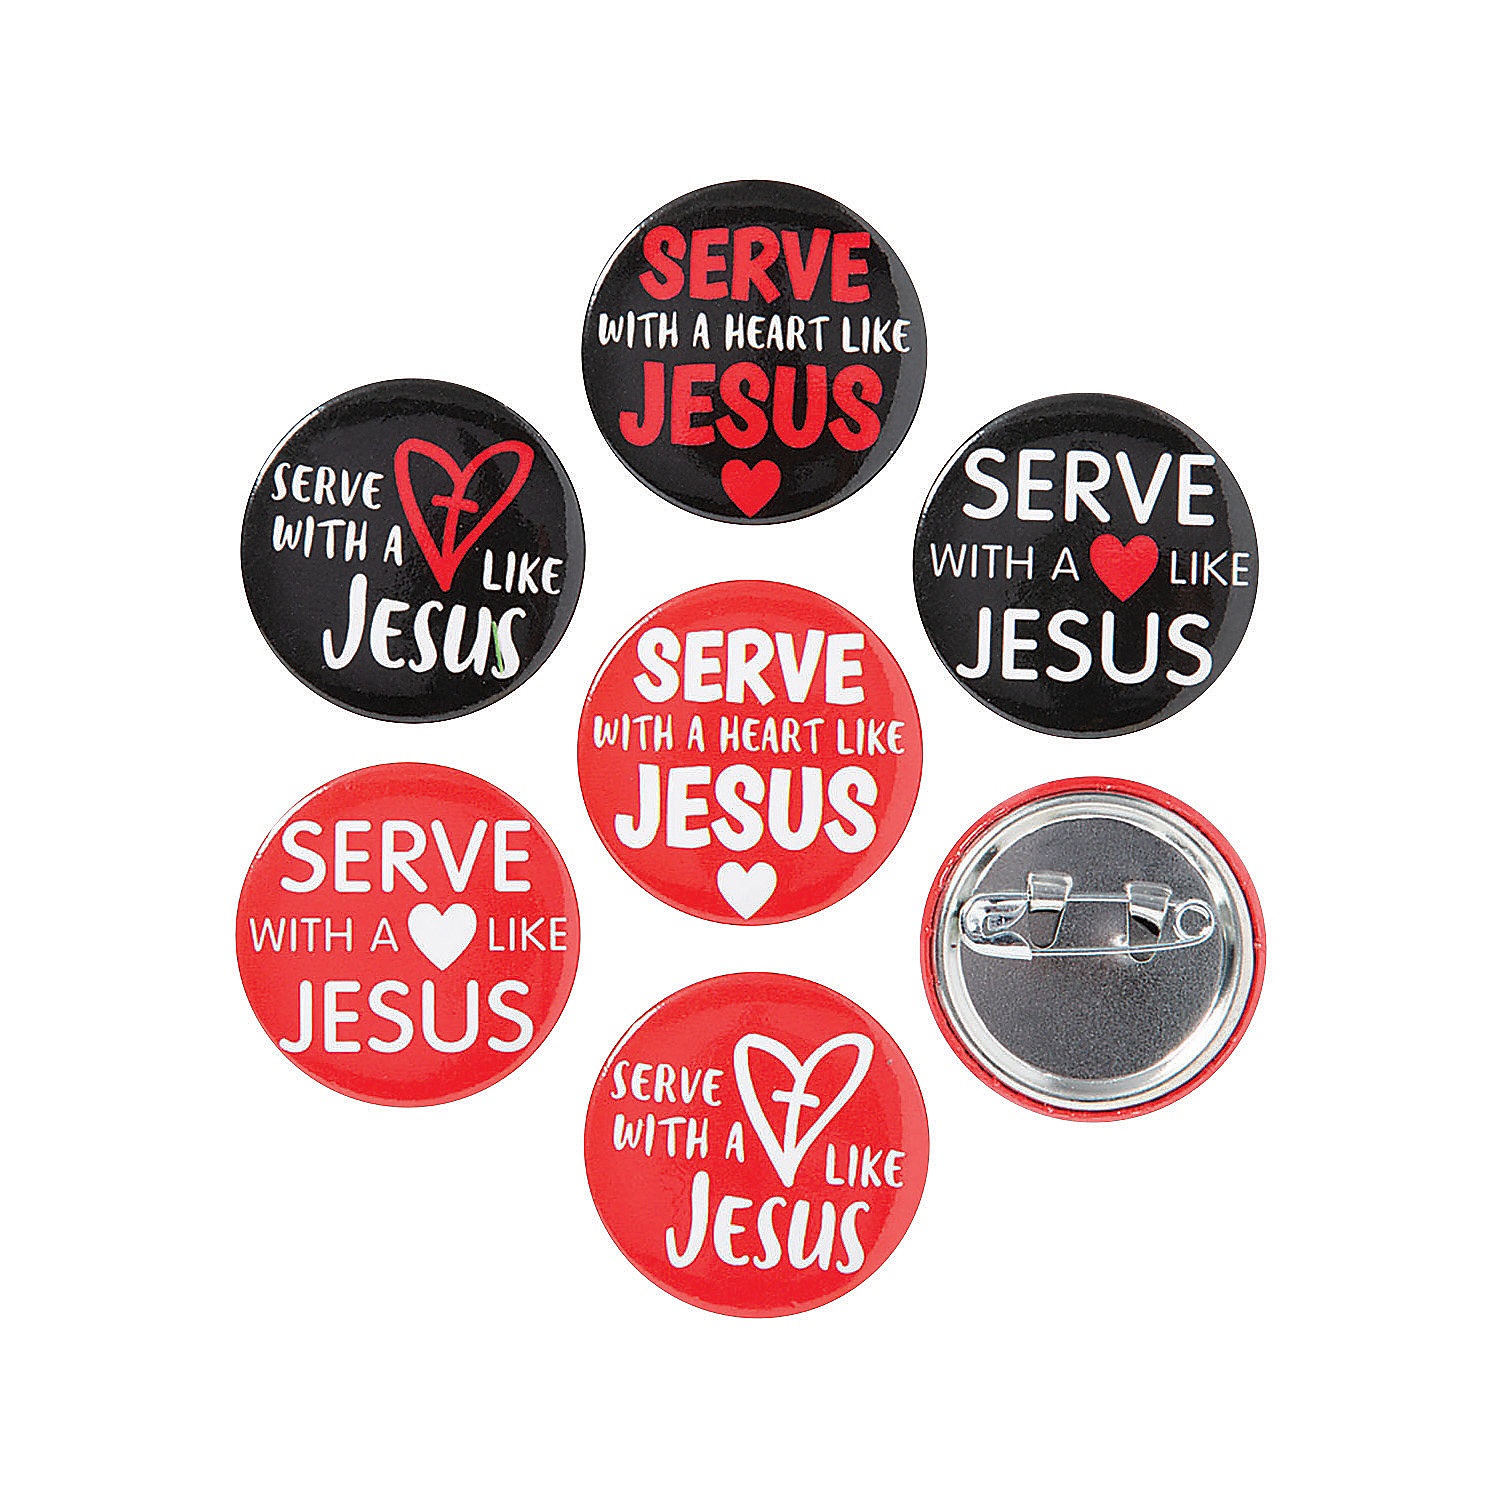 bulk-serve-with-a-heart-like-jesus-mini-buttons-96-pc-_13940157-a01